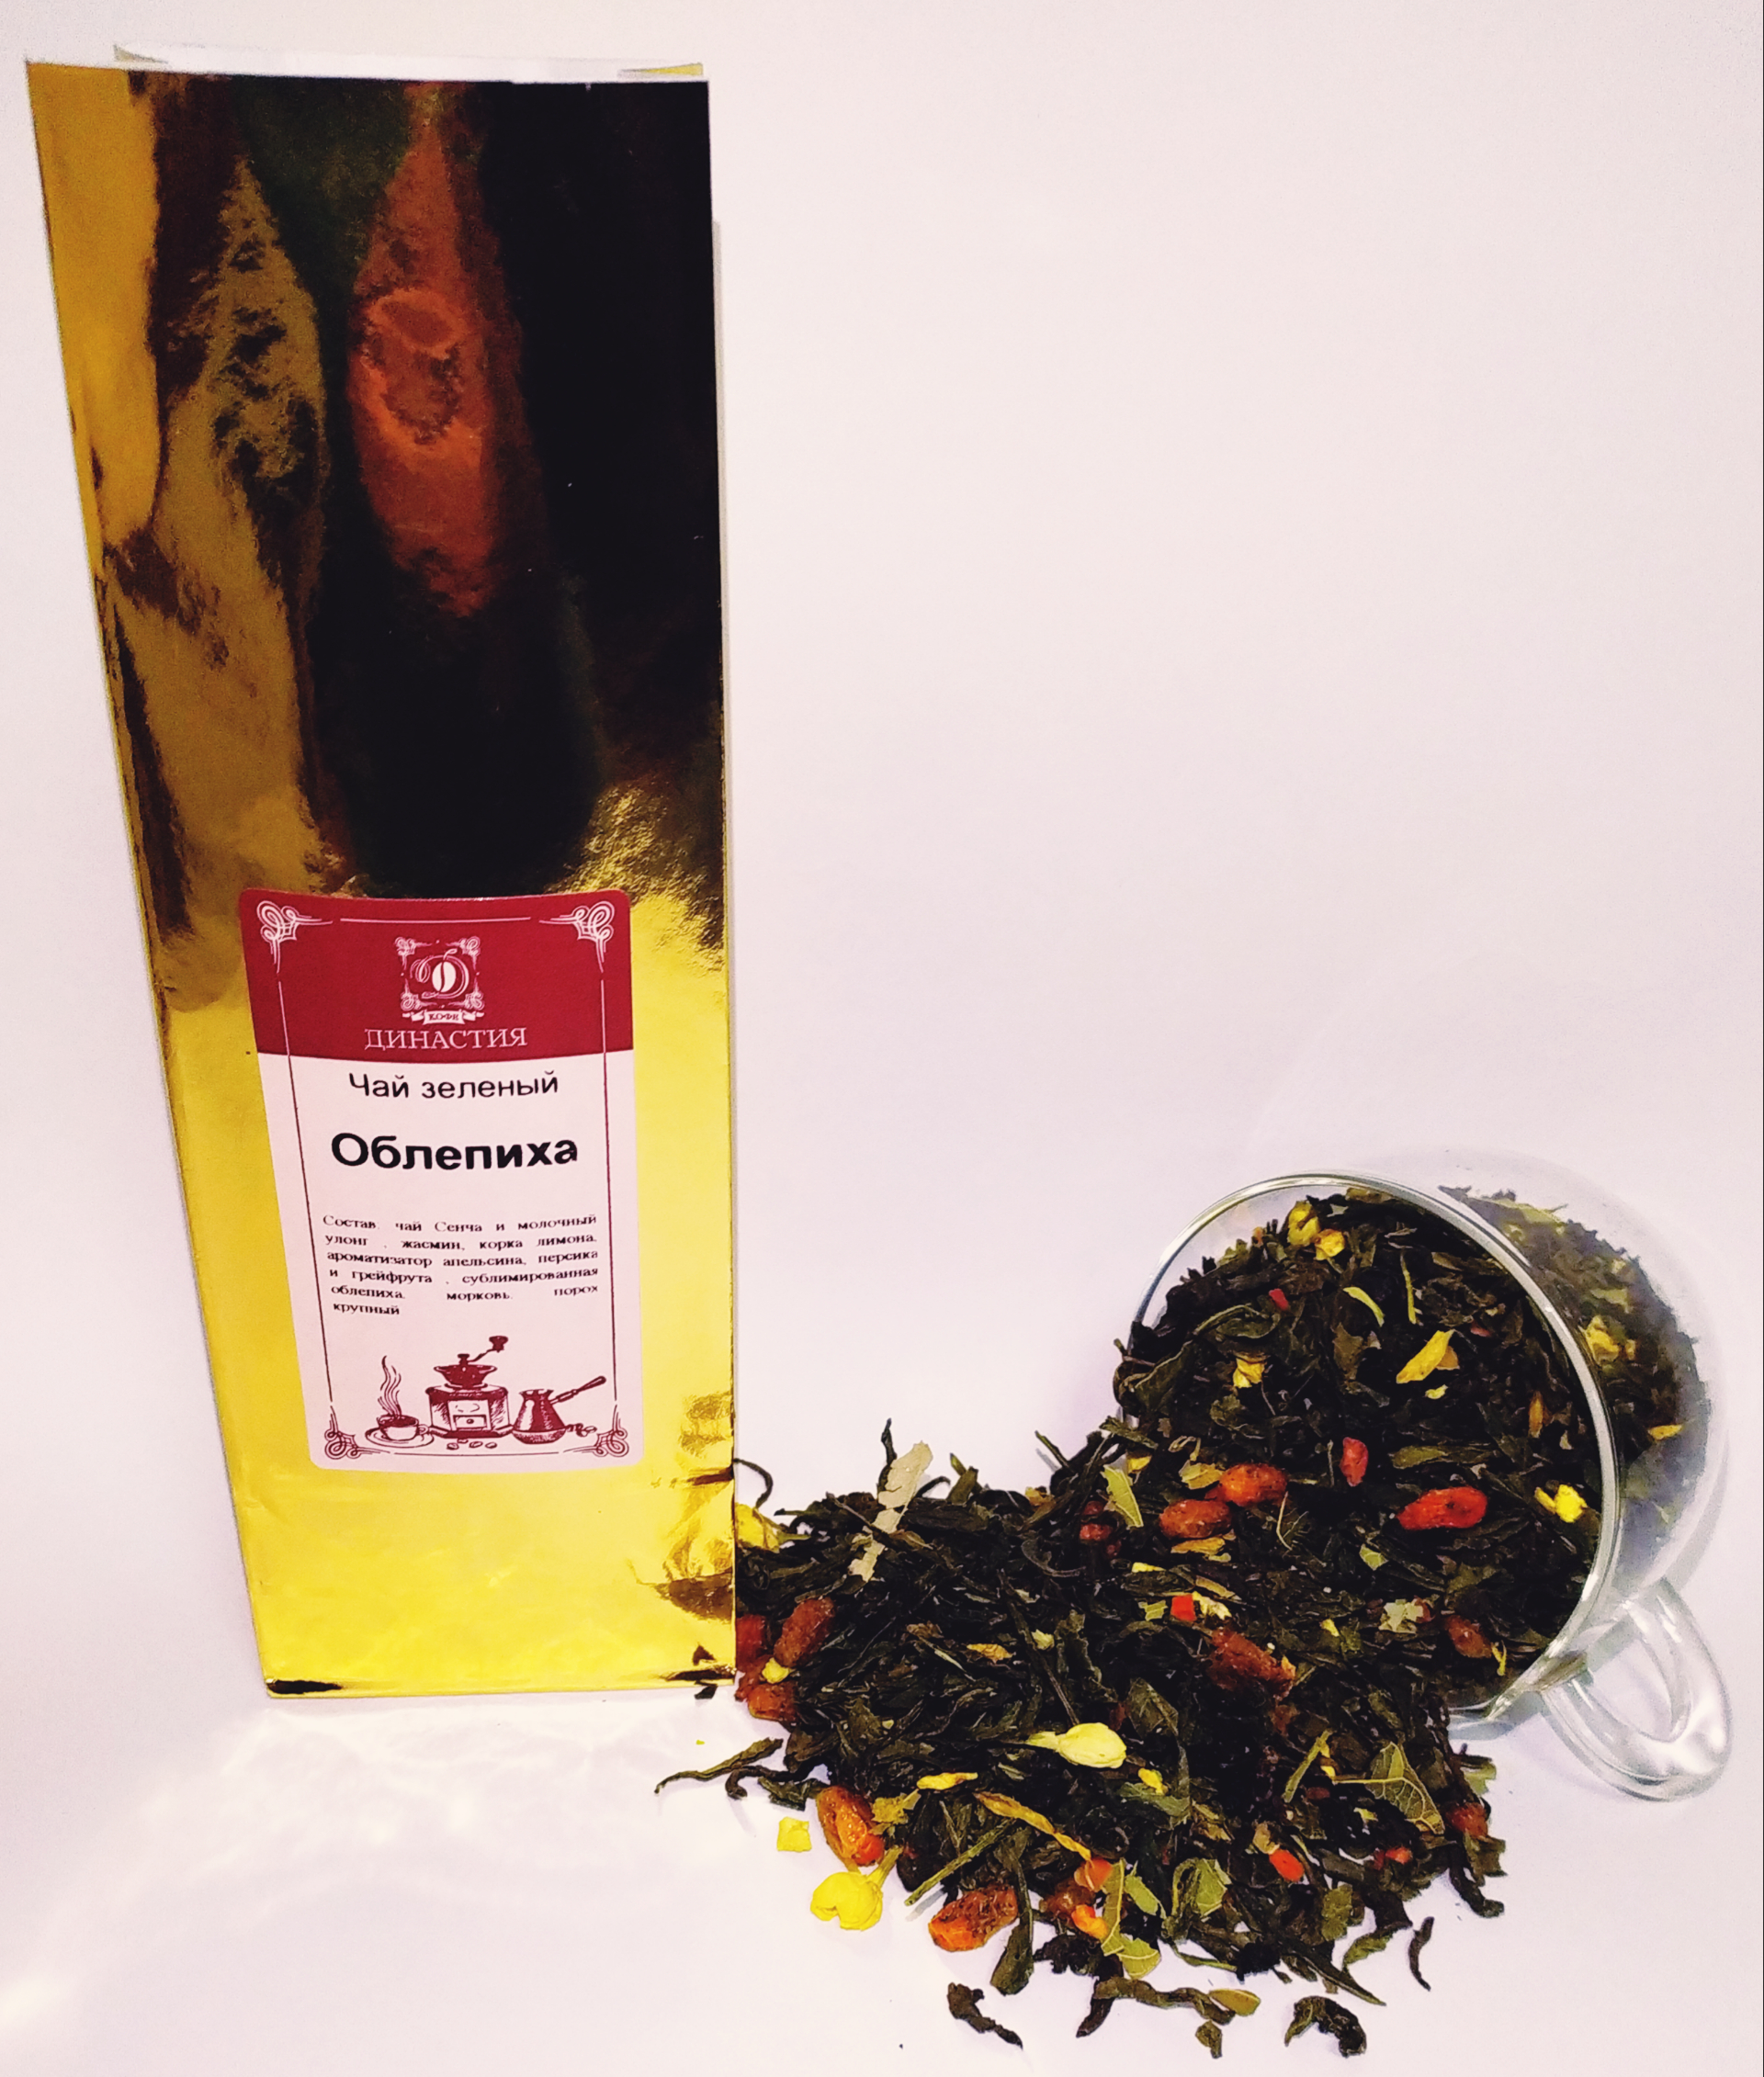 Чай ароматизированный Облепиха, 500 гр.